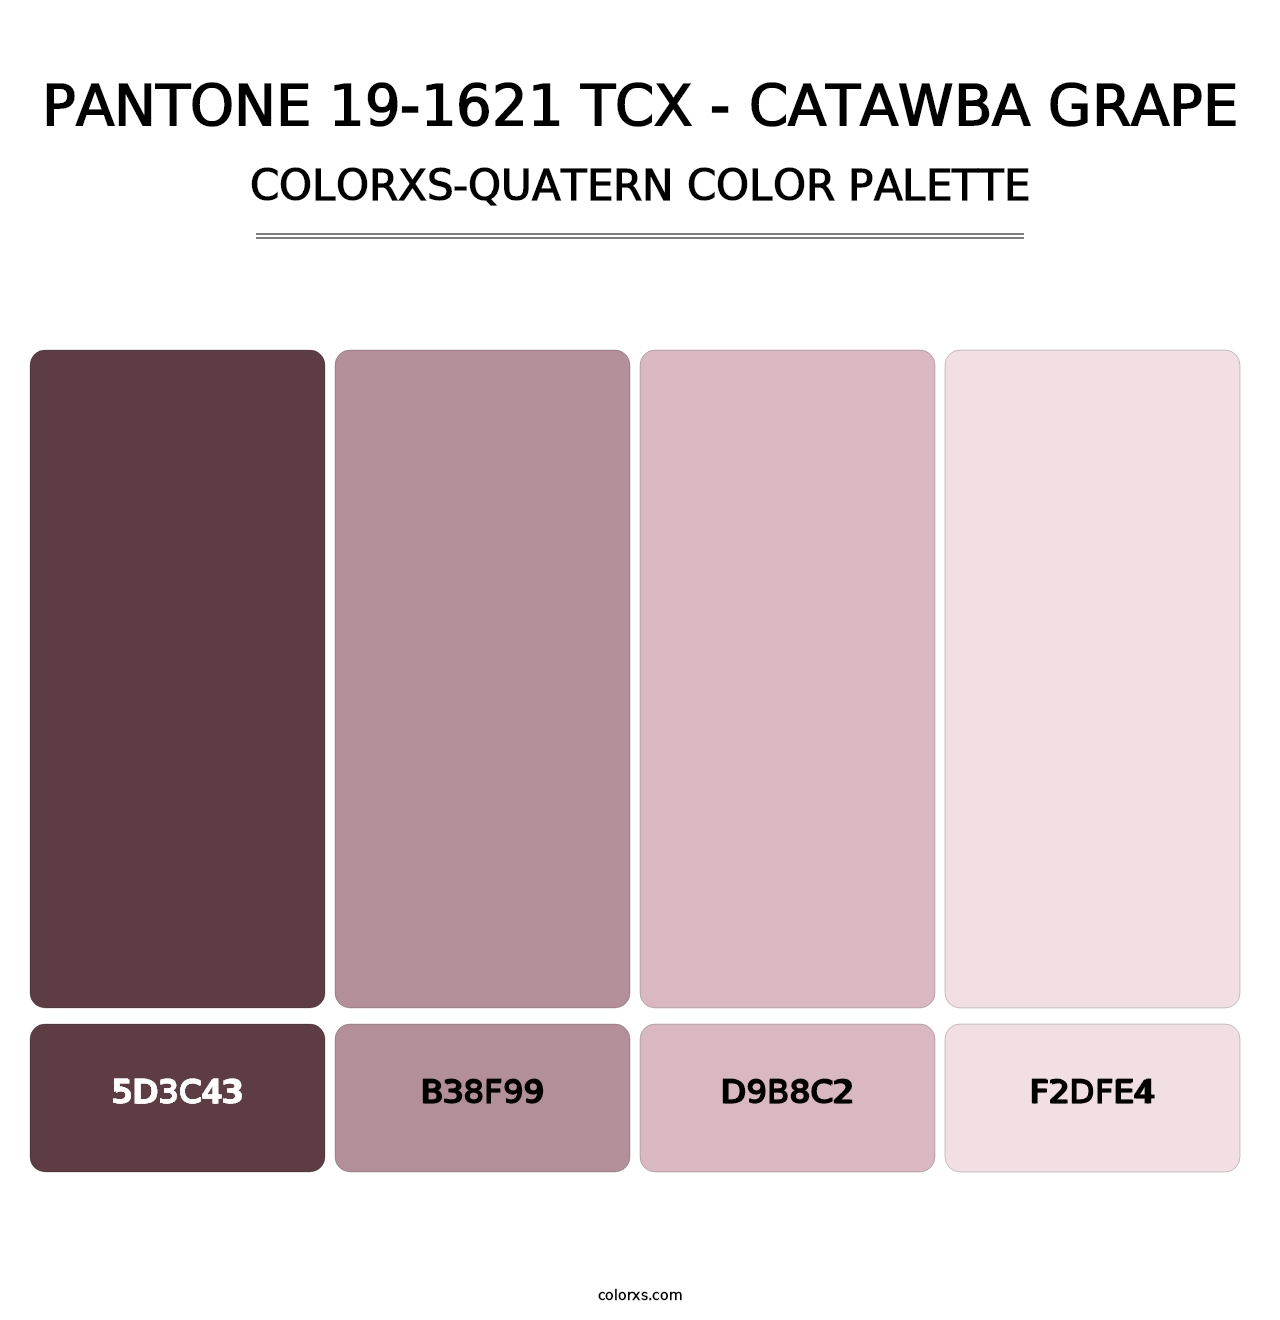 PANTONE 19-1621 TCX - Catawba Grape - Colorxs Quatern Palette